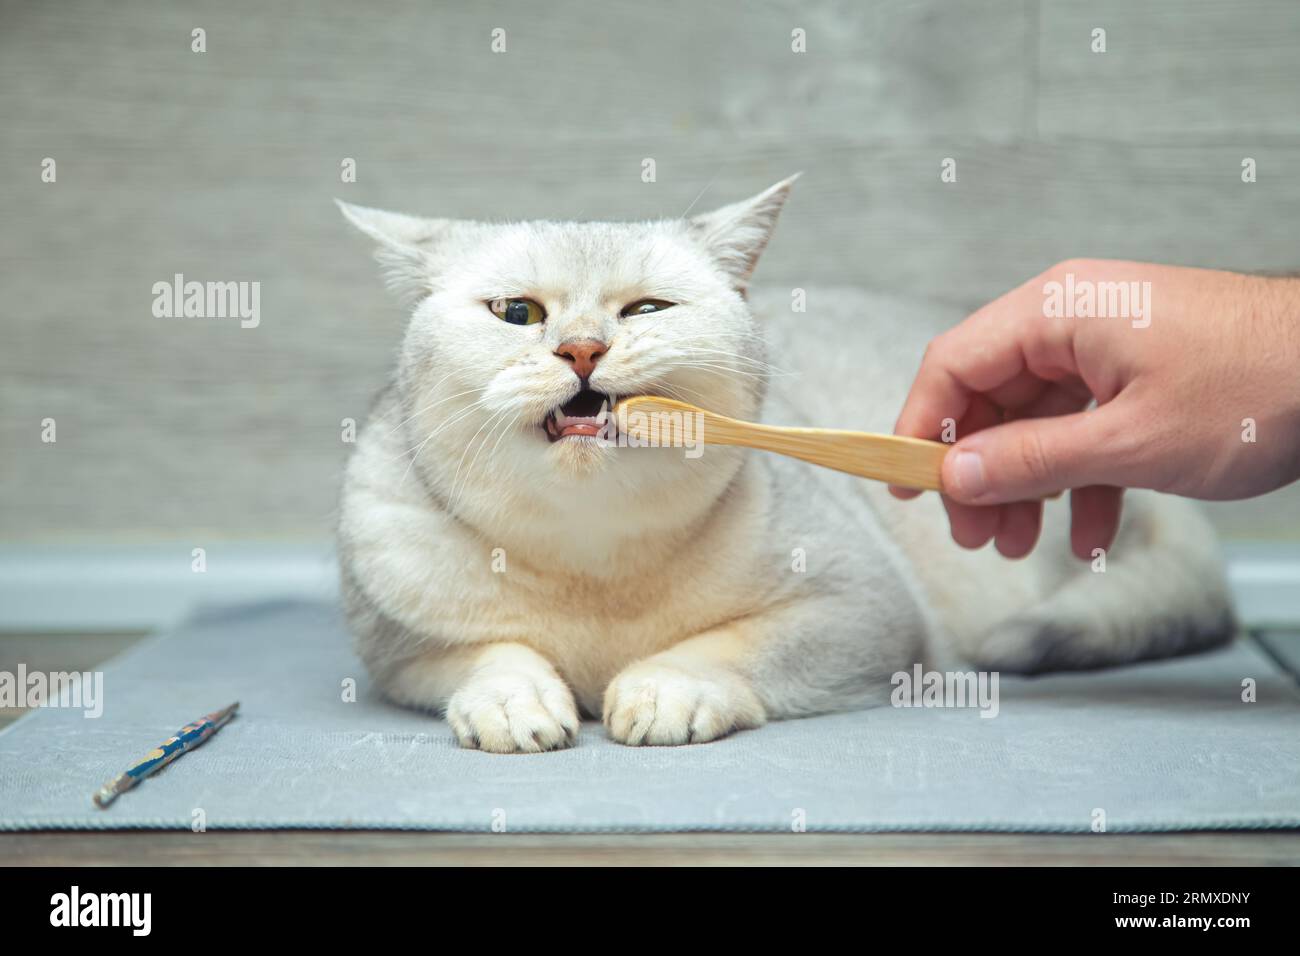 cat human teeth